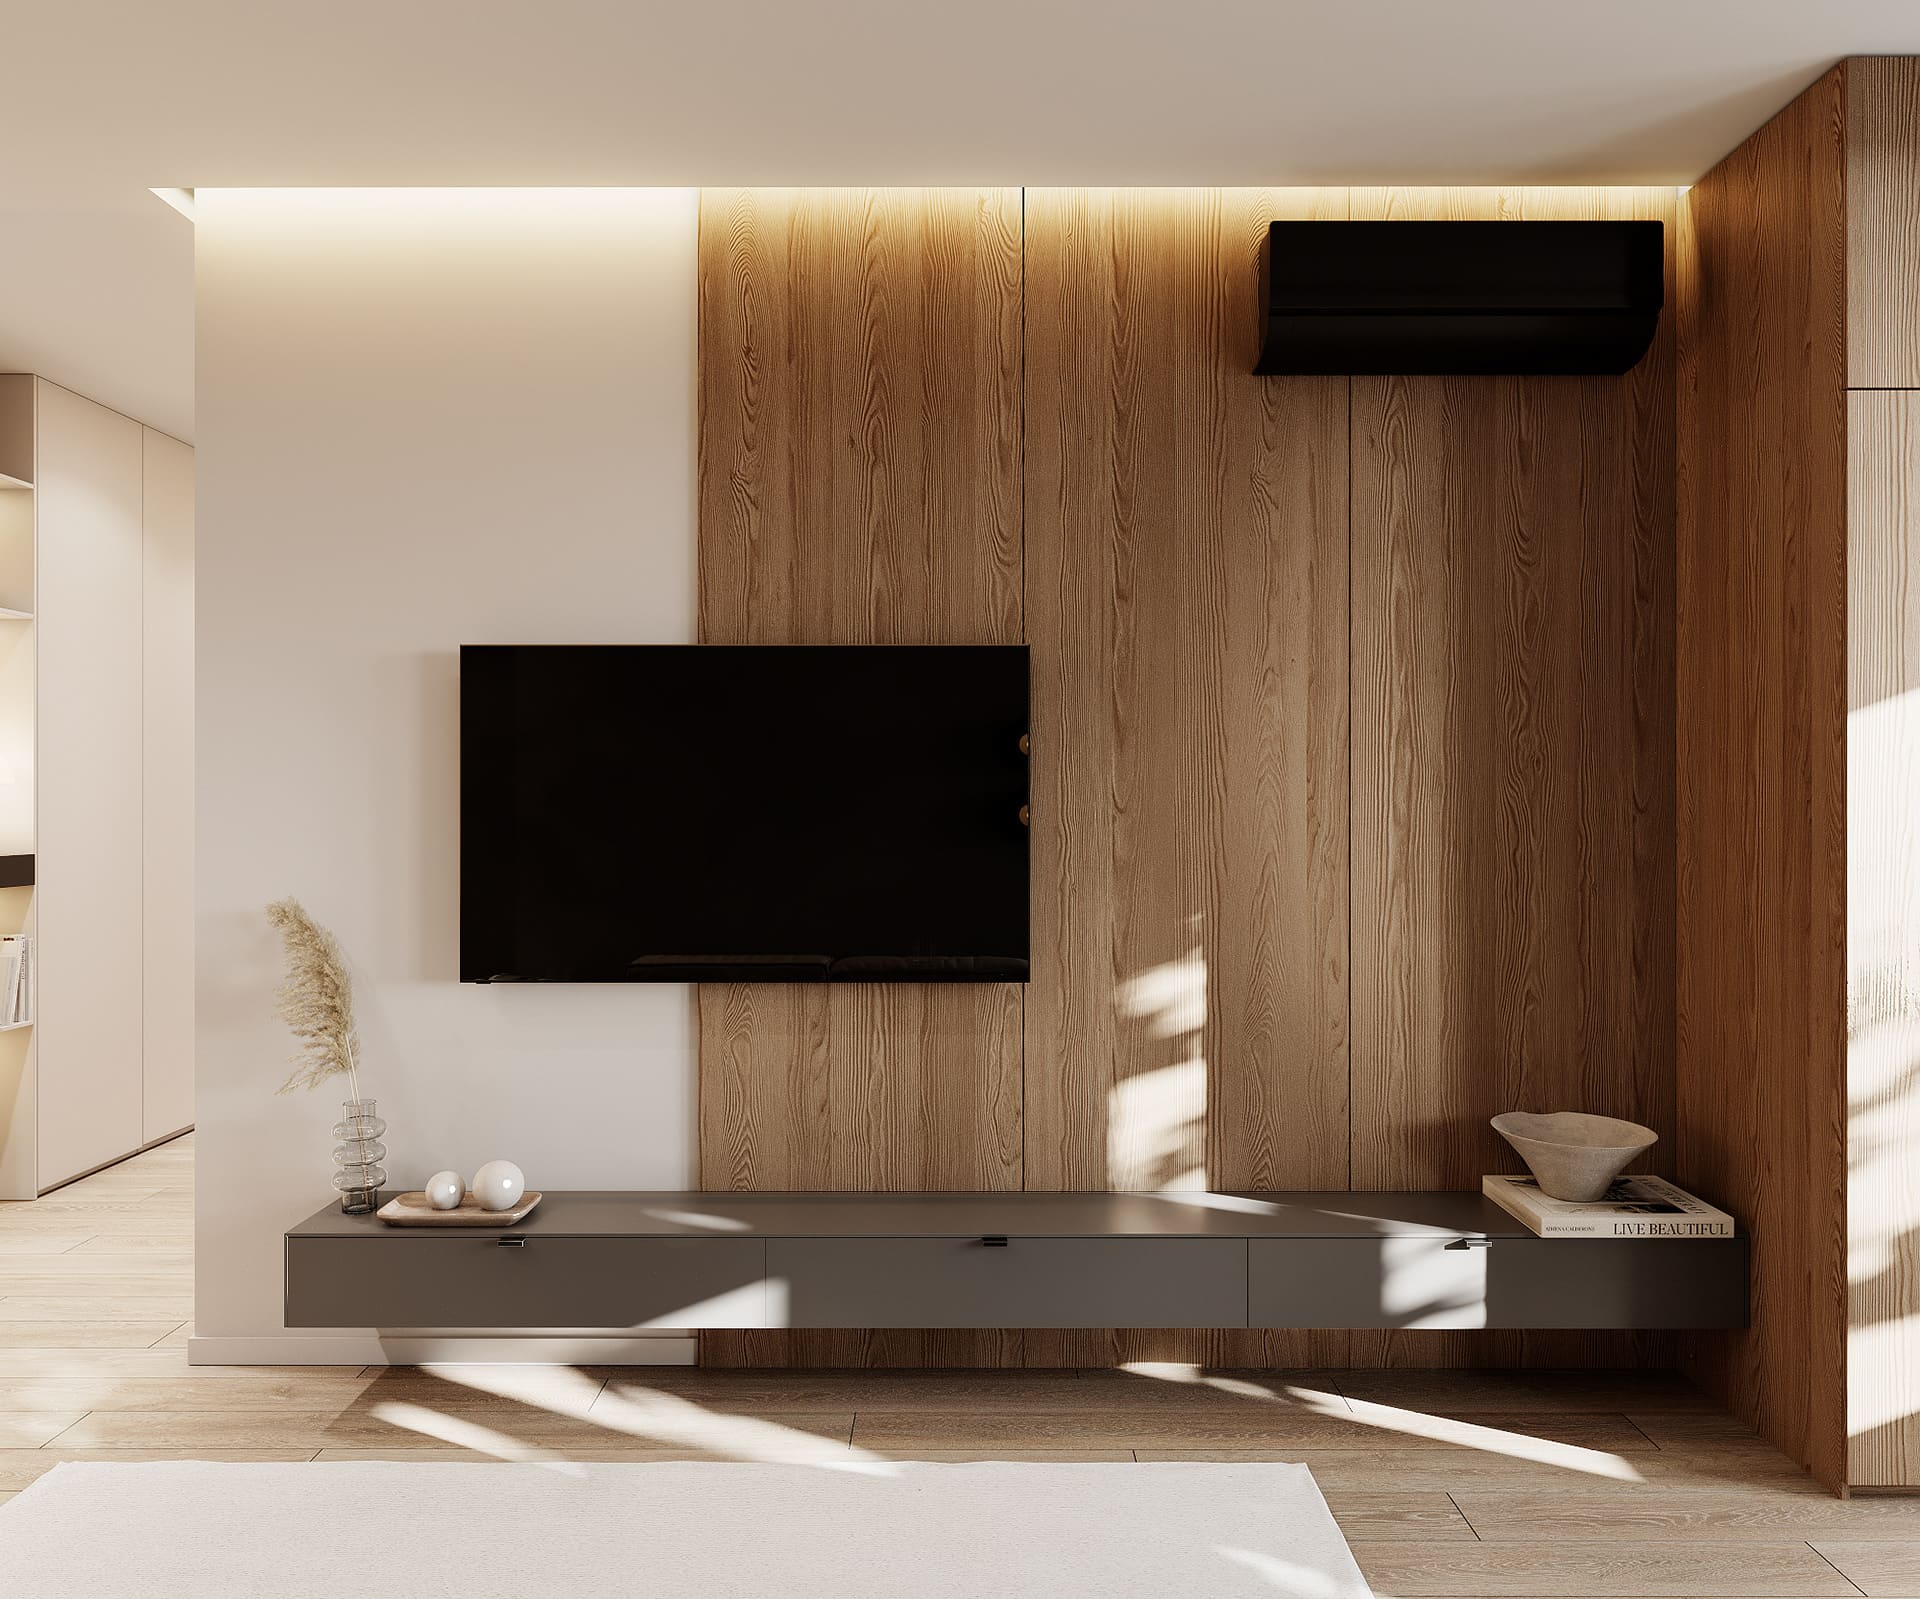 Лаконичная квартира в стиле минимализм, кухня-гостинная, фото 10